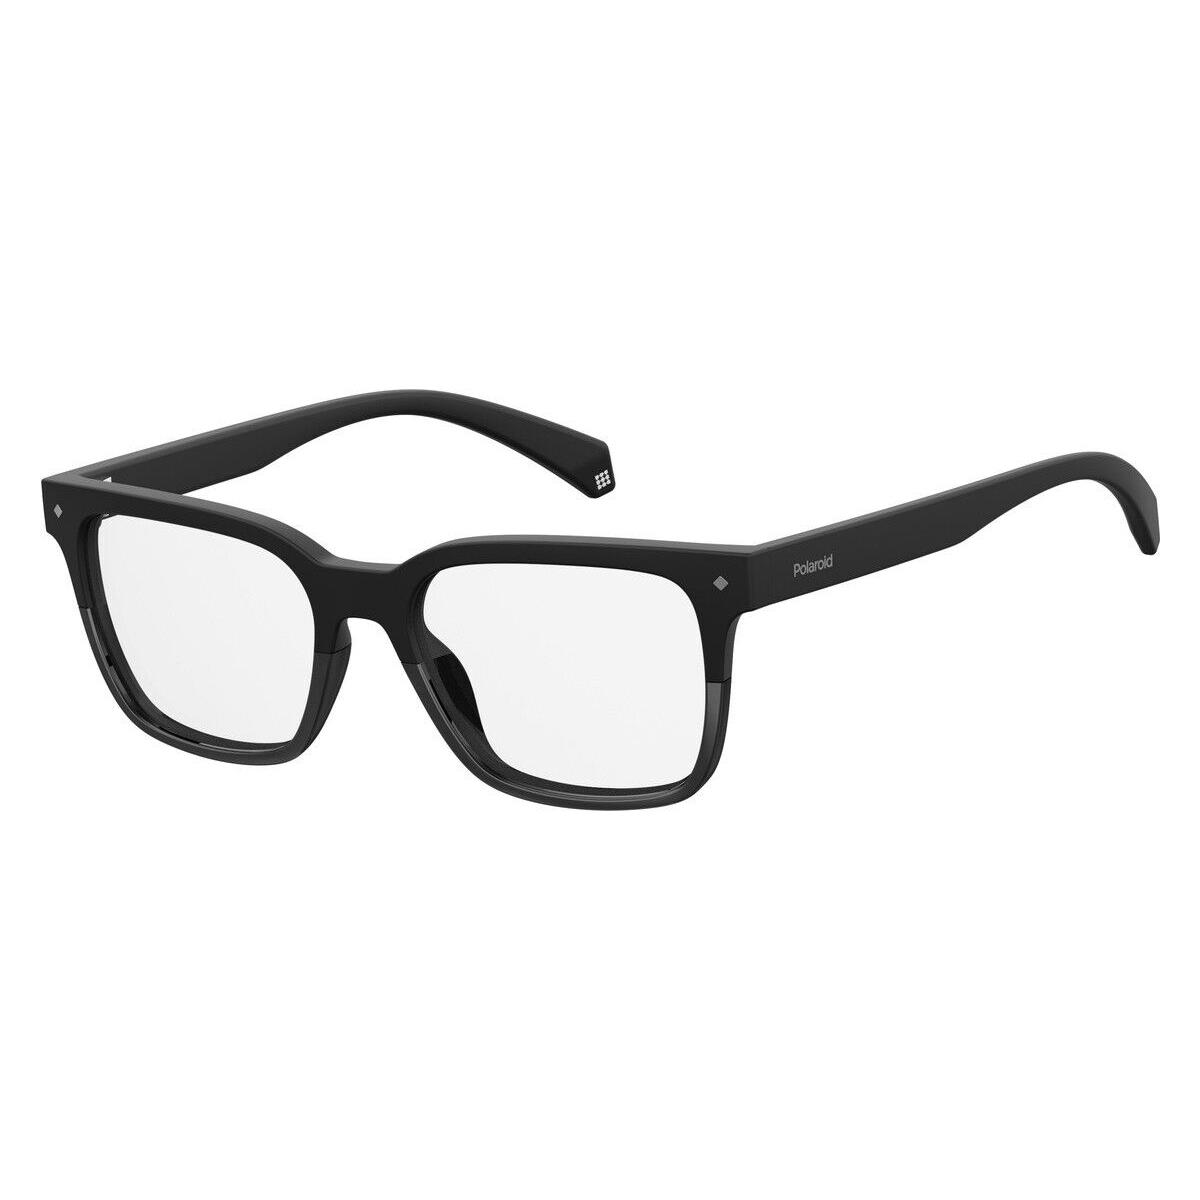 Polaroid D 343 Eyeglasses RX Men 0807 Black Square 52mm